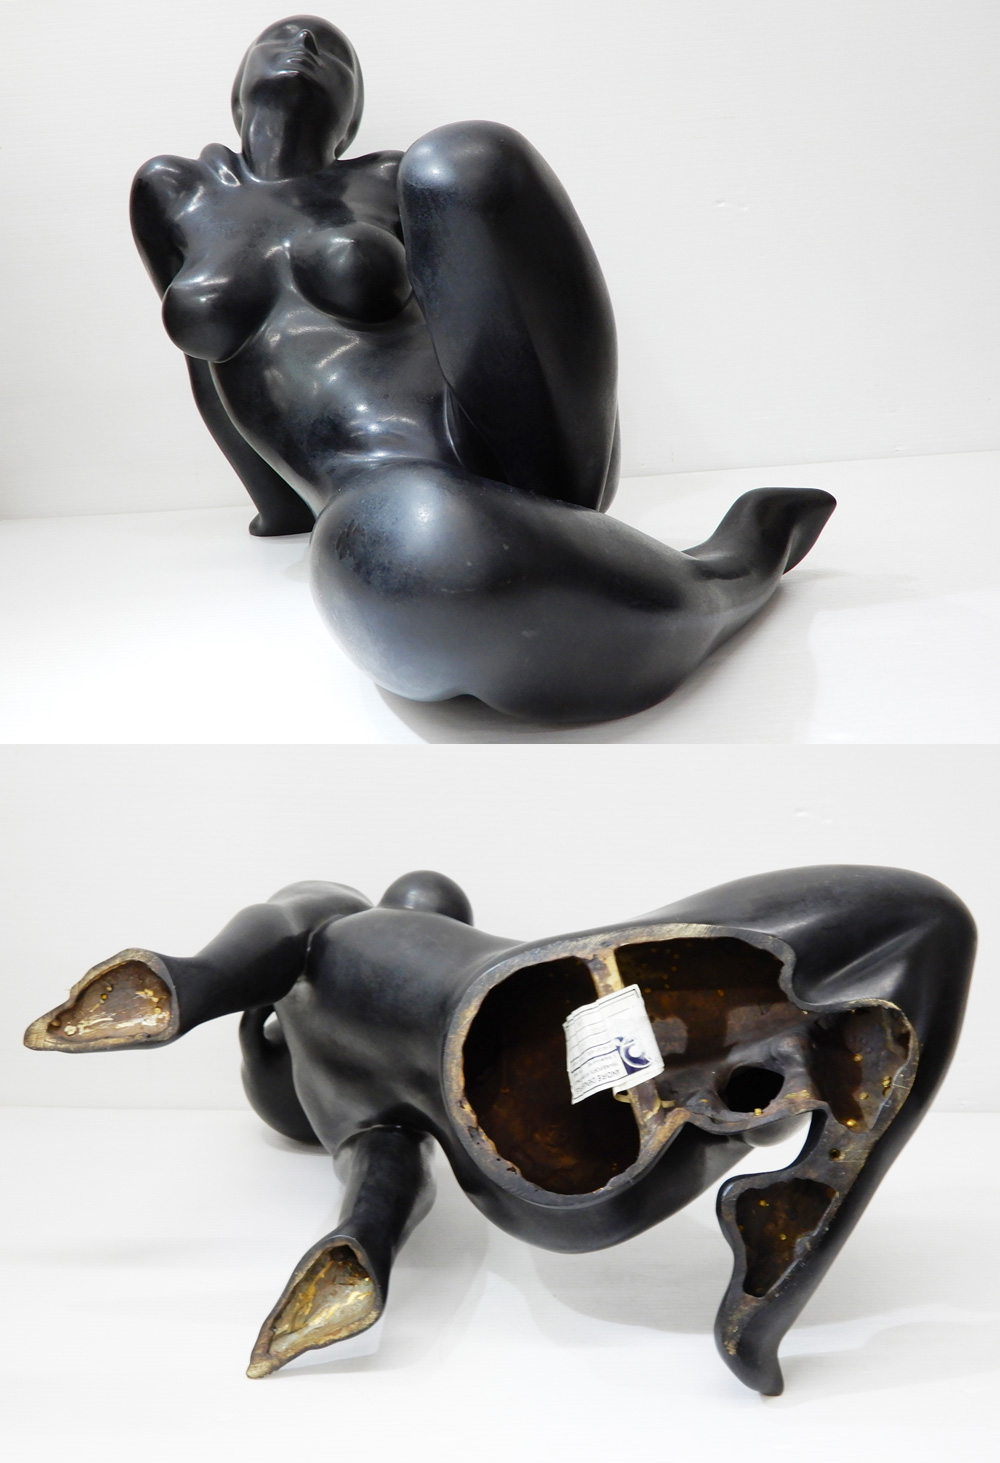 新価格◆◎2点セット! フランス彫刻家 Patrick Drouin パトリック・ドゥルーアン 裸婦像 ブロンズ 女性像 オブジェ 西洋彫刻